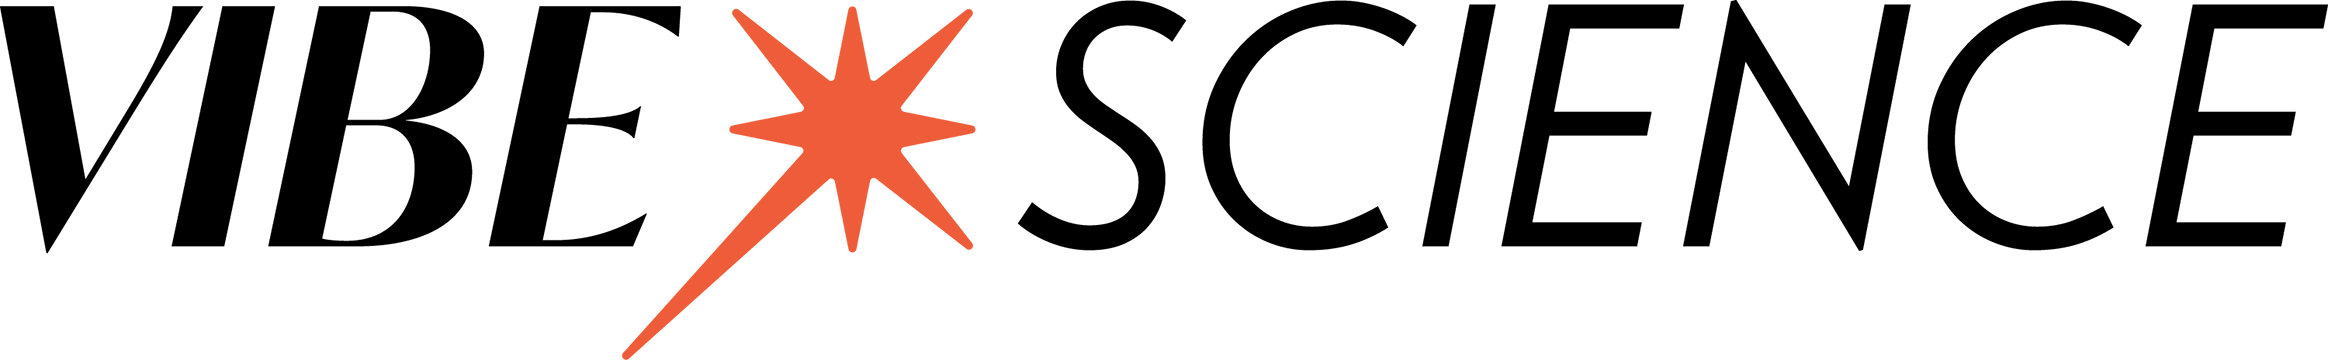 Vibe Science Logo Black